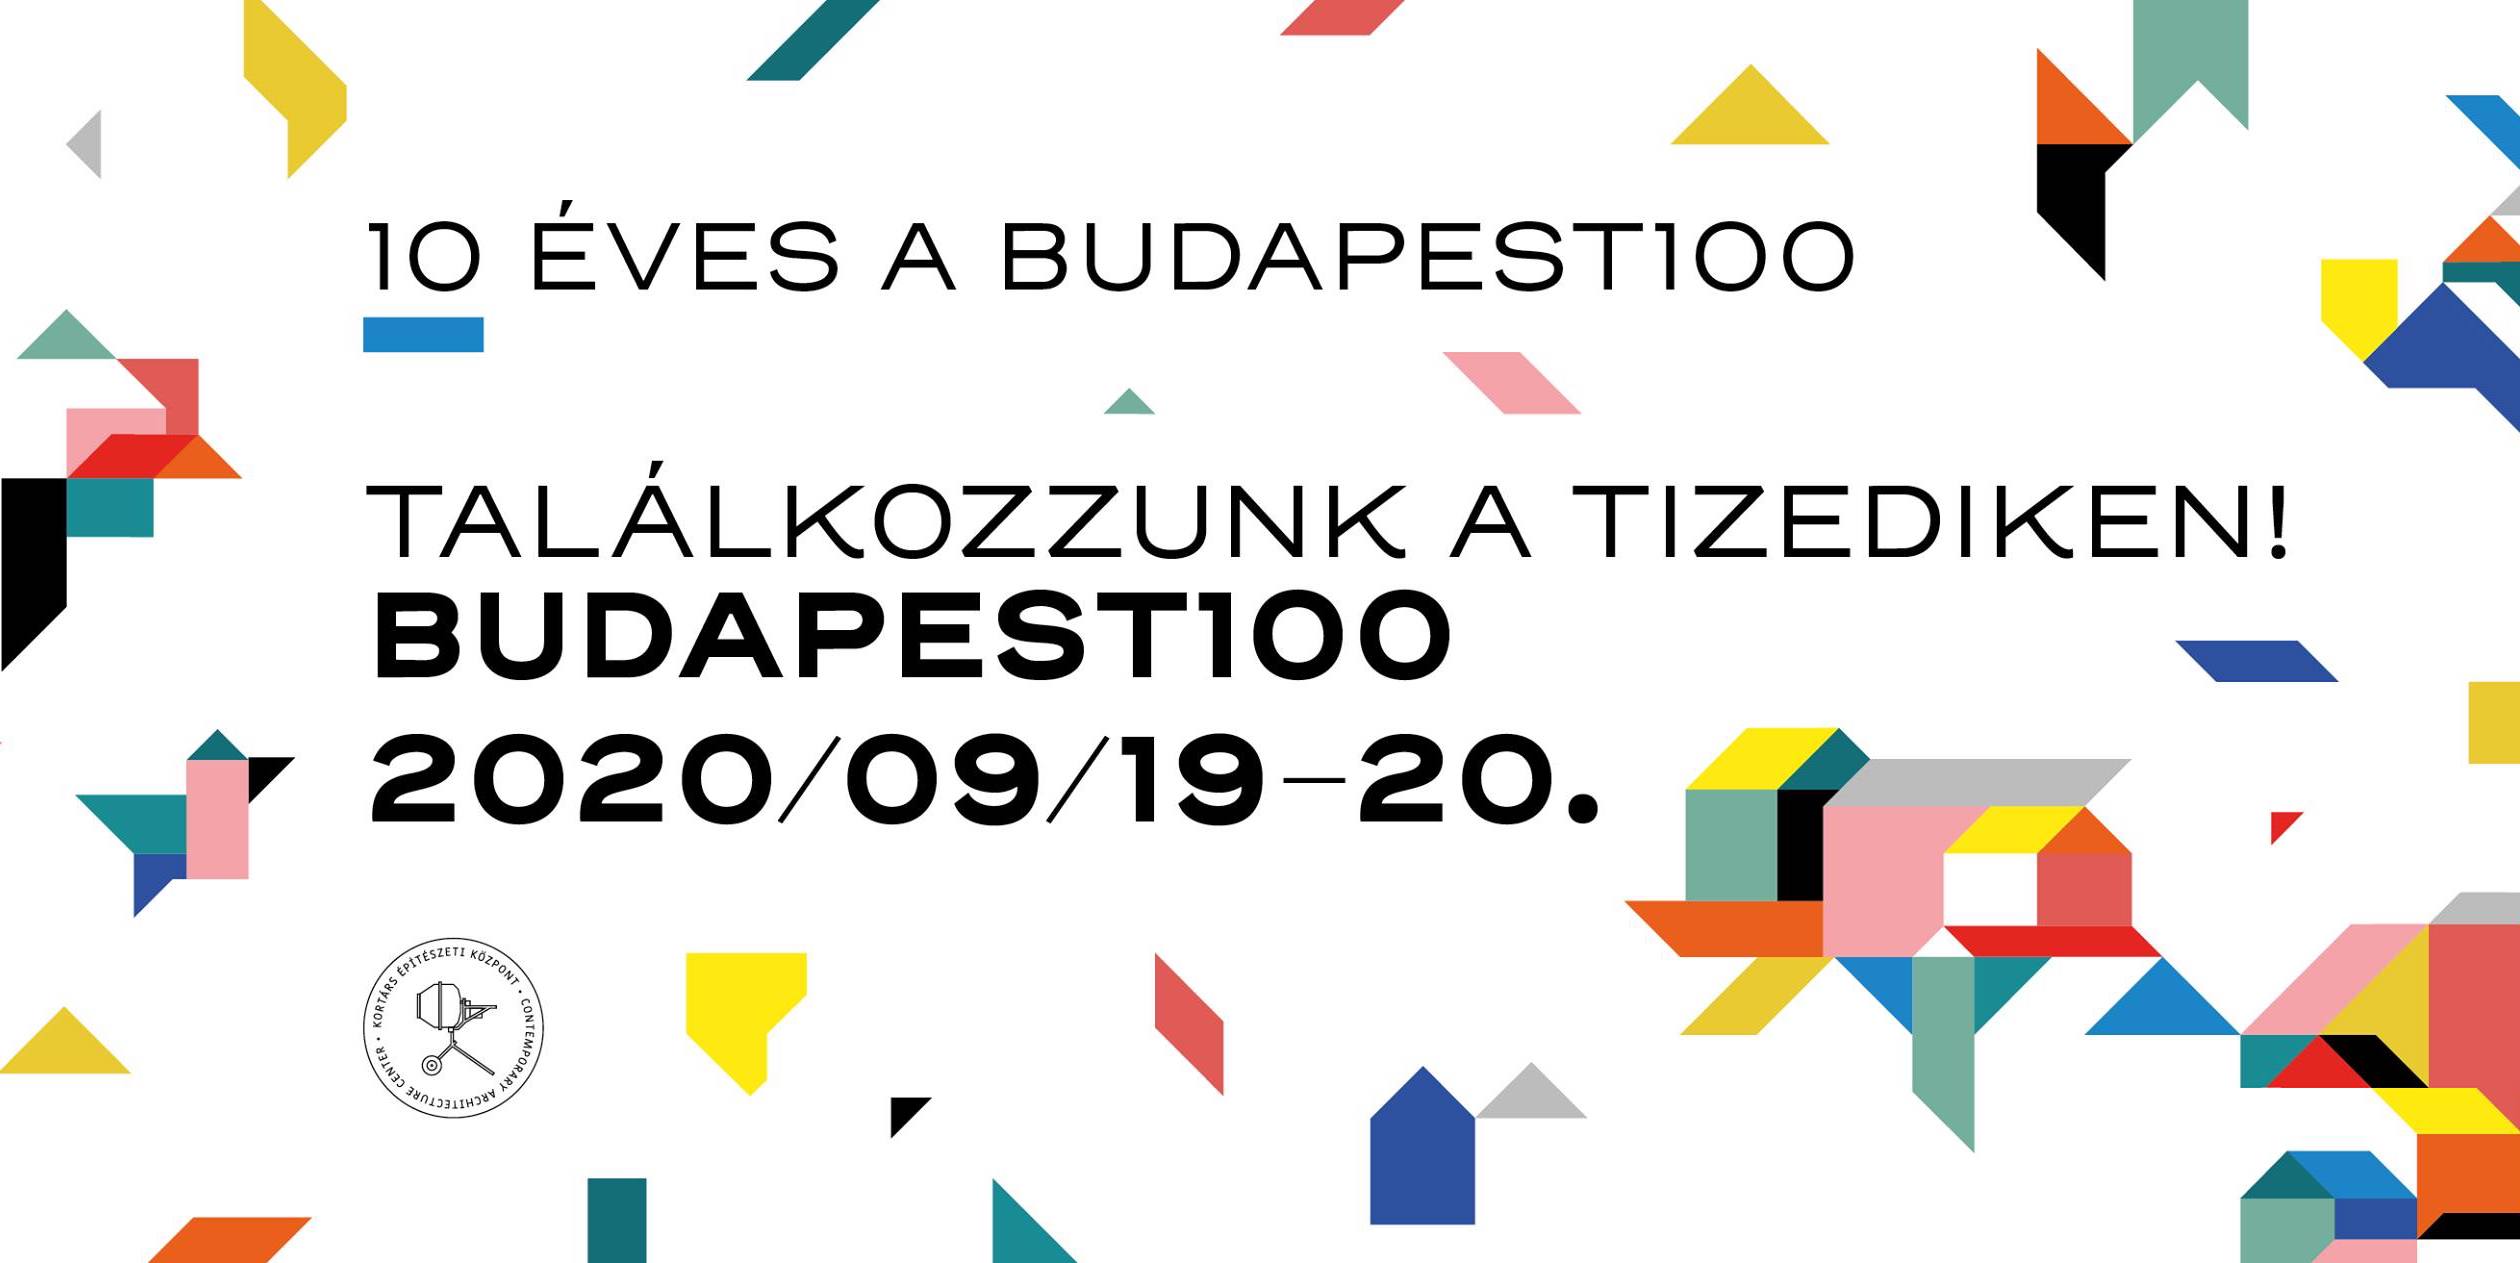 Tíz éves a Budapest100 városi fesztivál